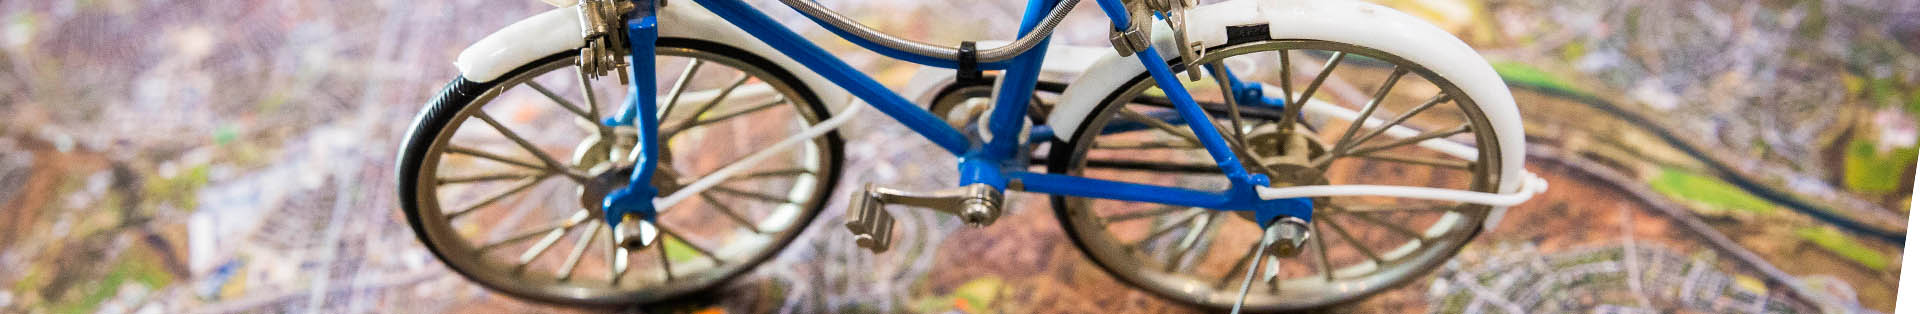 Mode Heim Handwerk: 
		ME-subheader-anreise-fahrrad
	